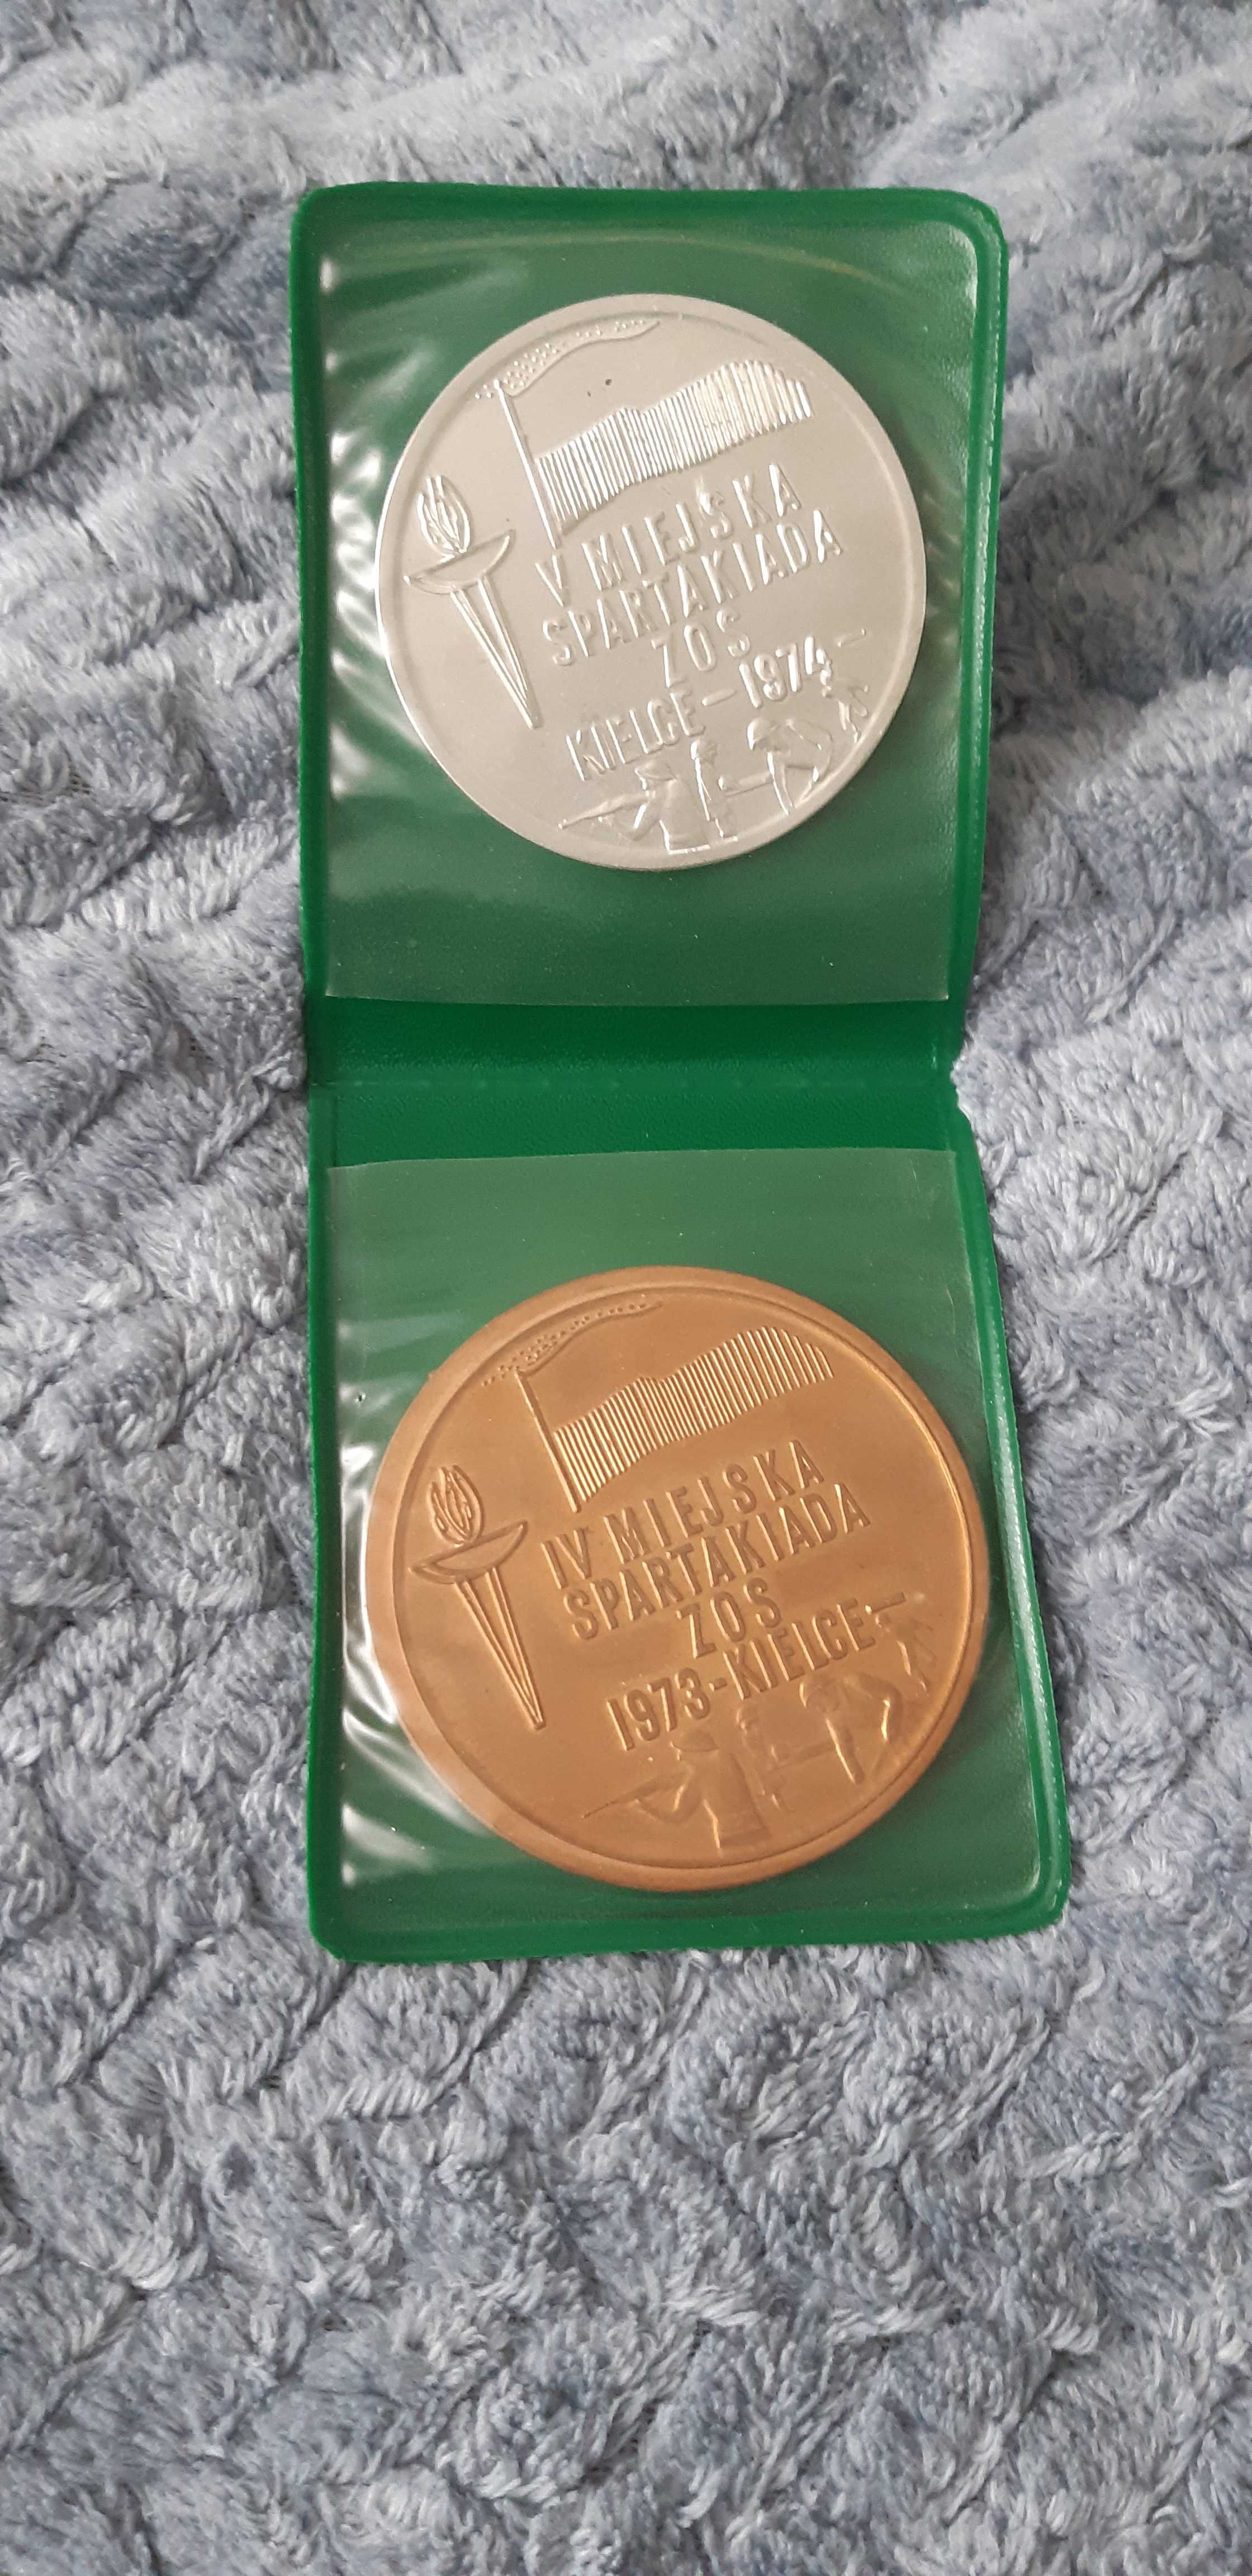 2 medale Miejska Spartakiada Kielce 1973 i 1974